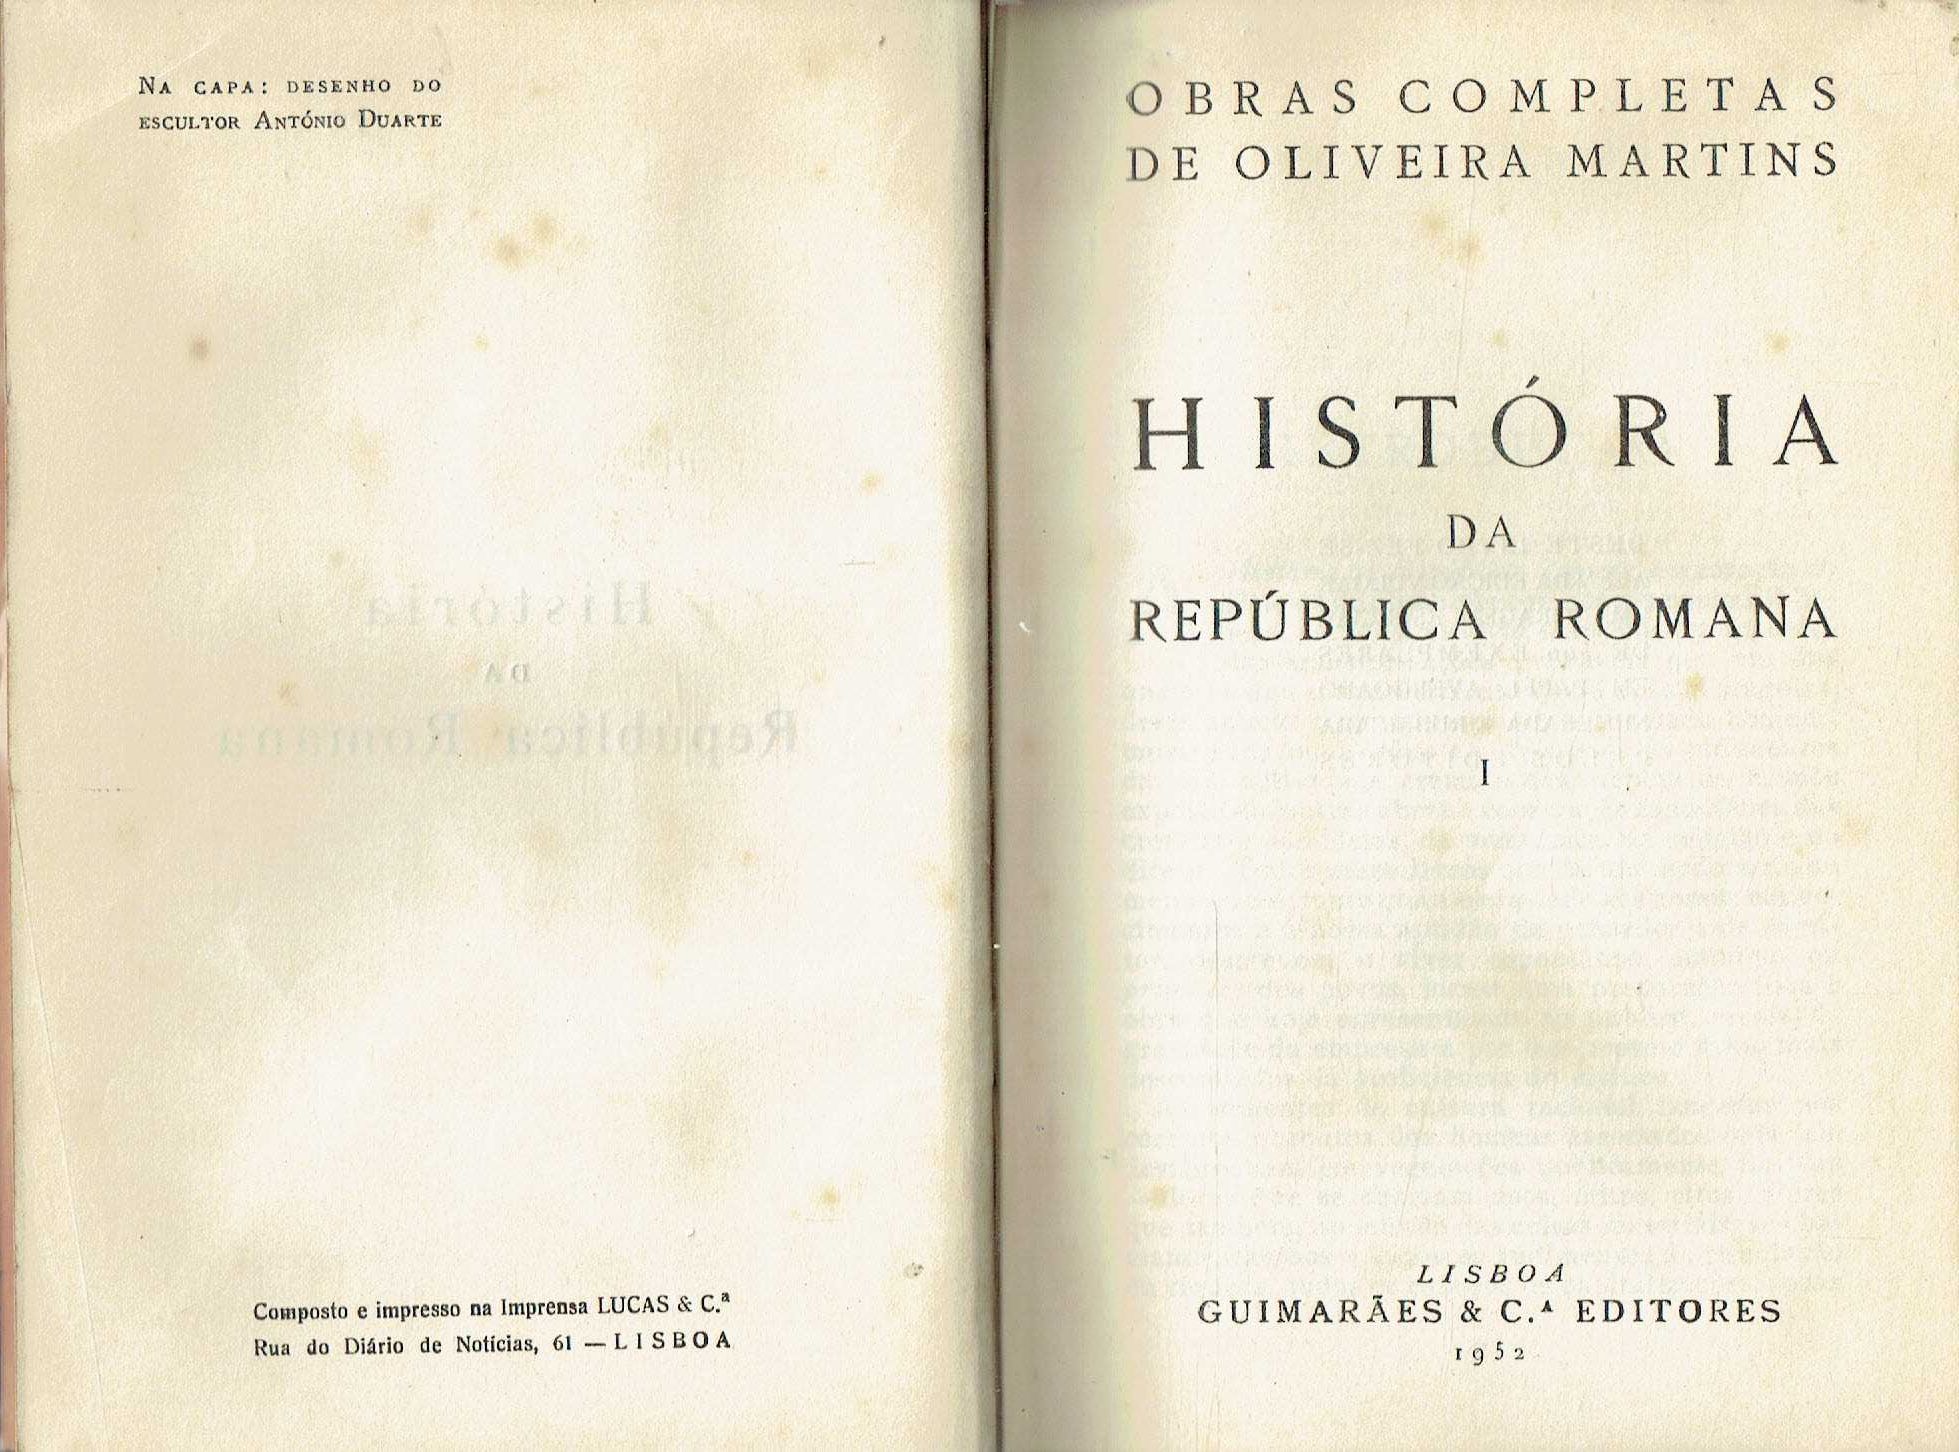 7837

História da República Romana - 3 Volumes
de Oliveira Martins.